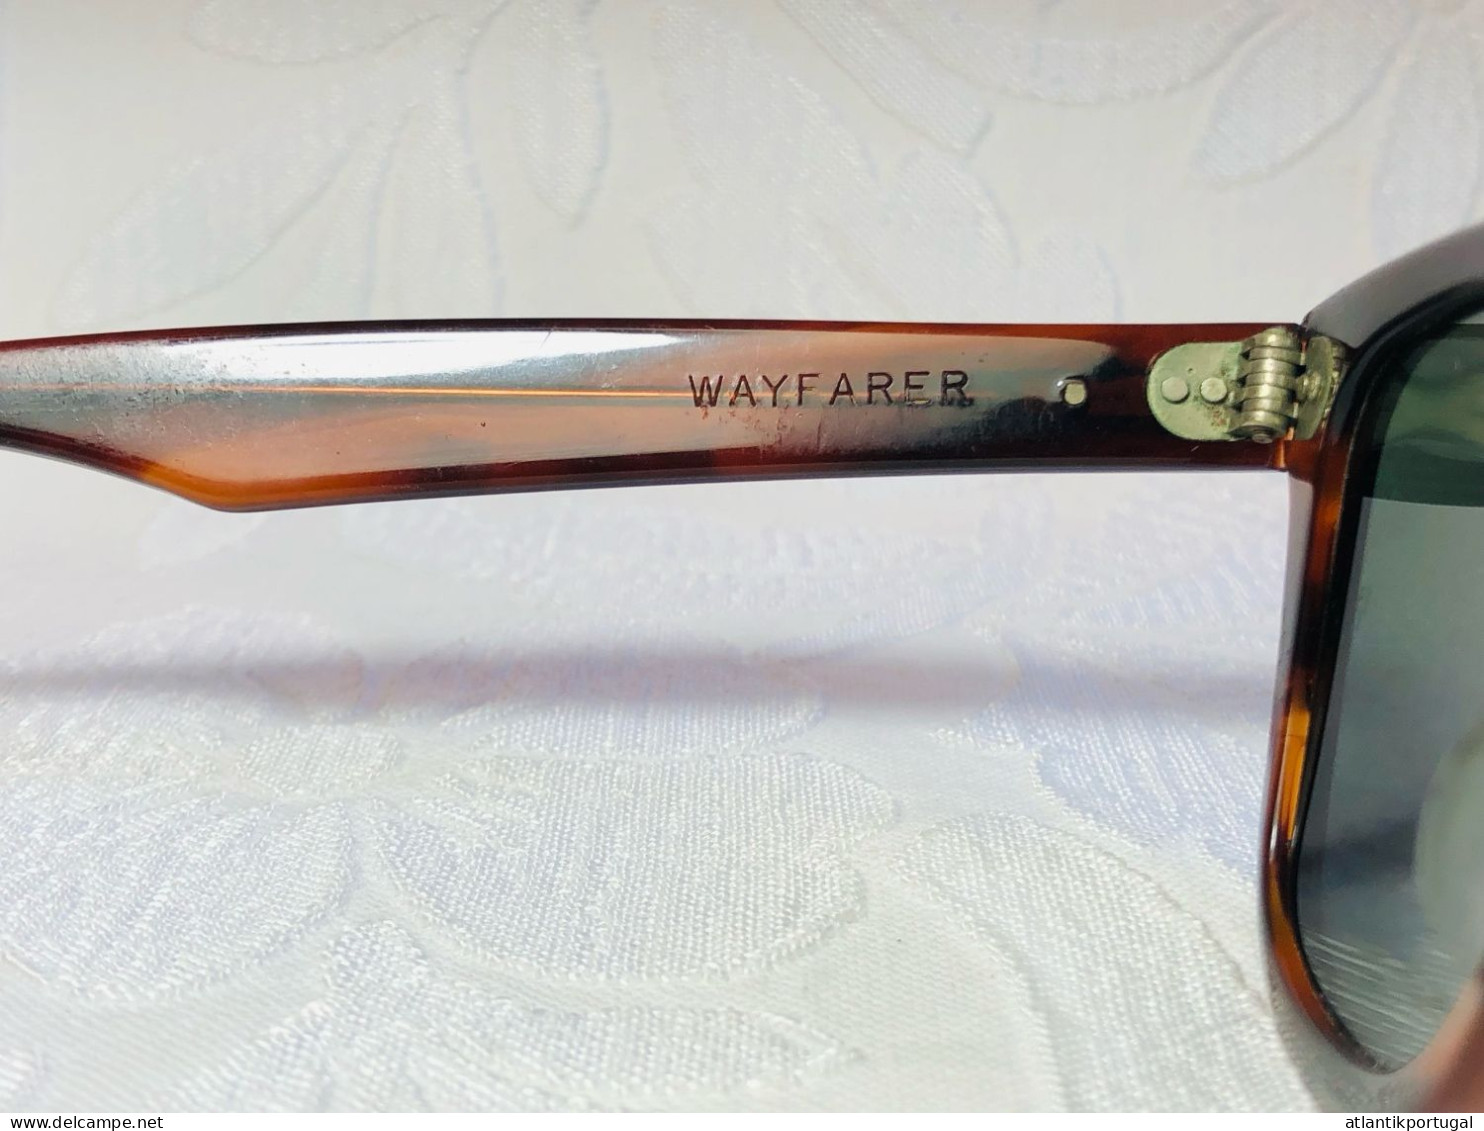 Vintage Sonnenbrille B&L Ray-Ban U.S.A. Wayfarer